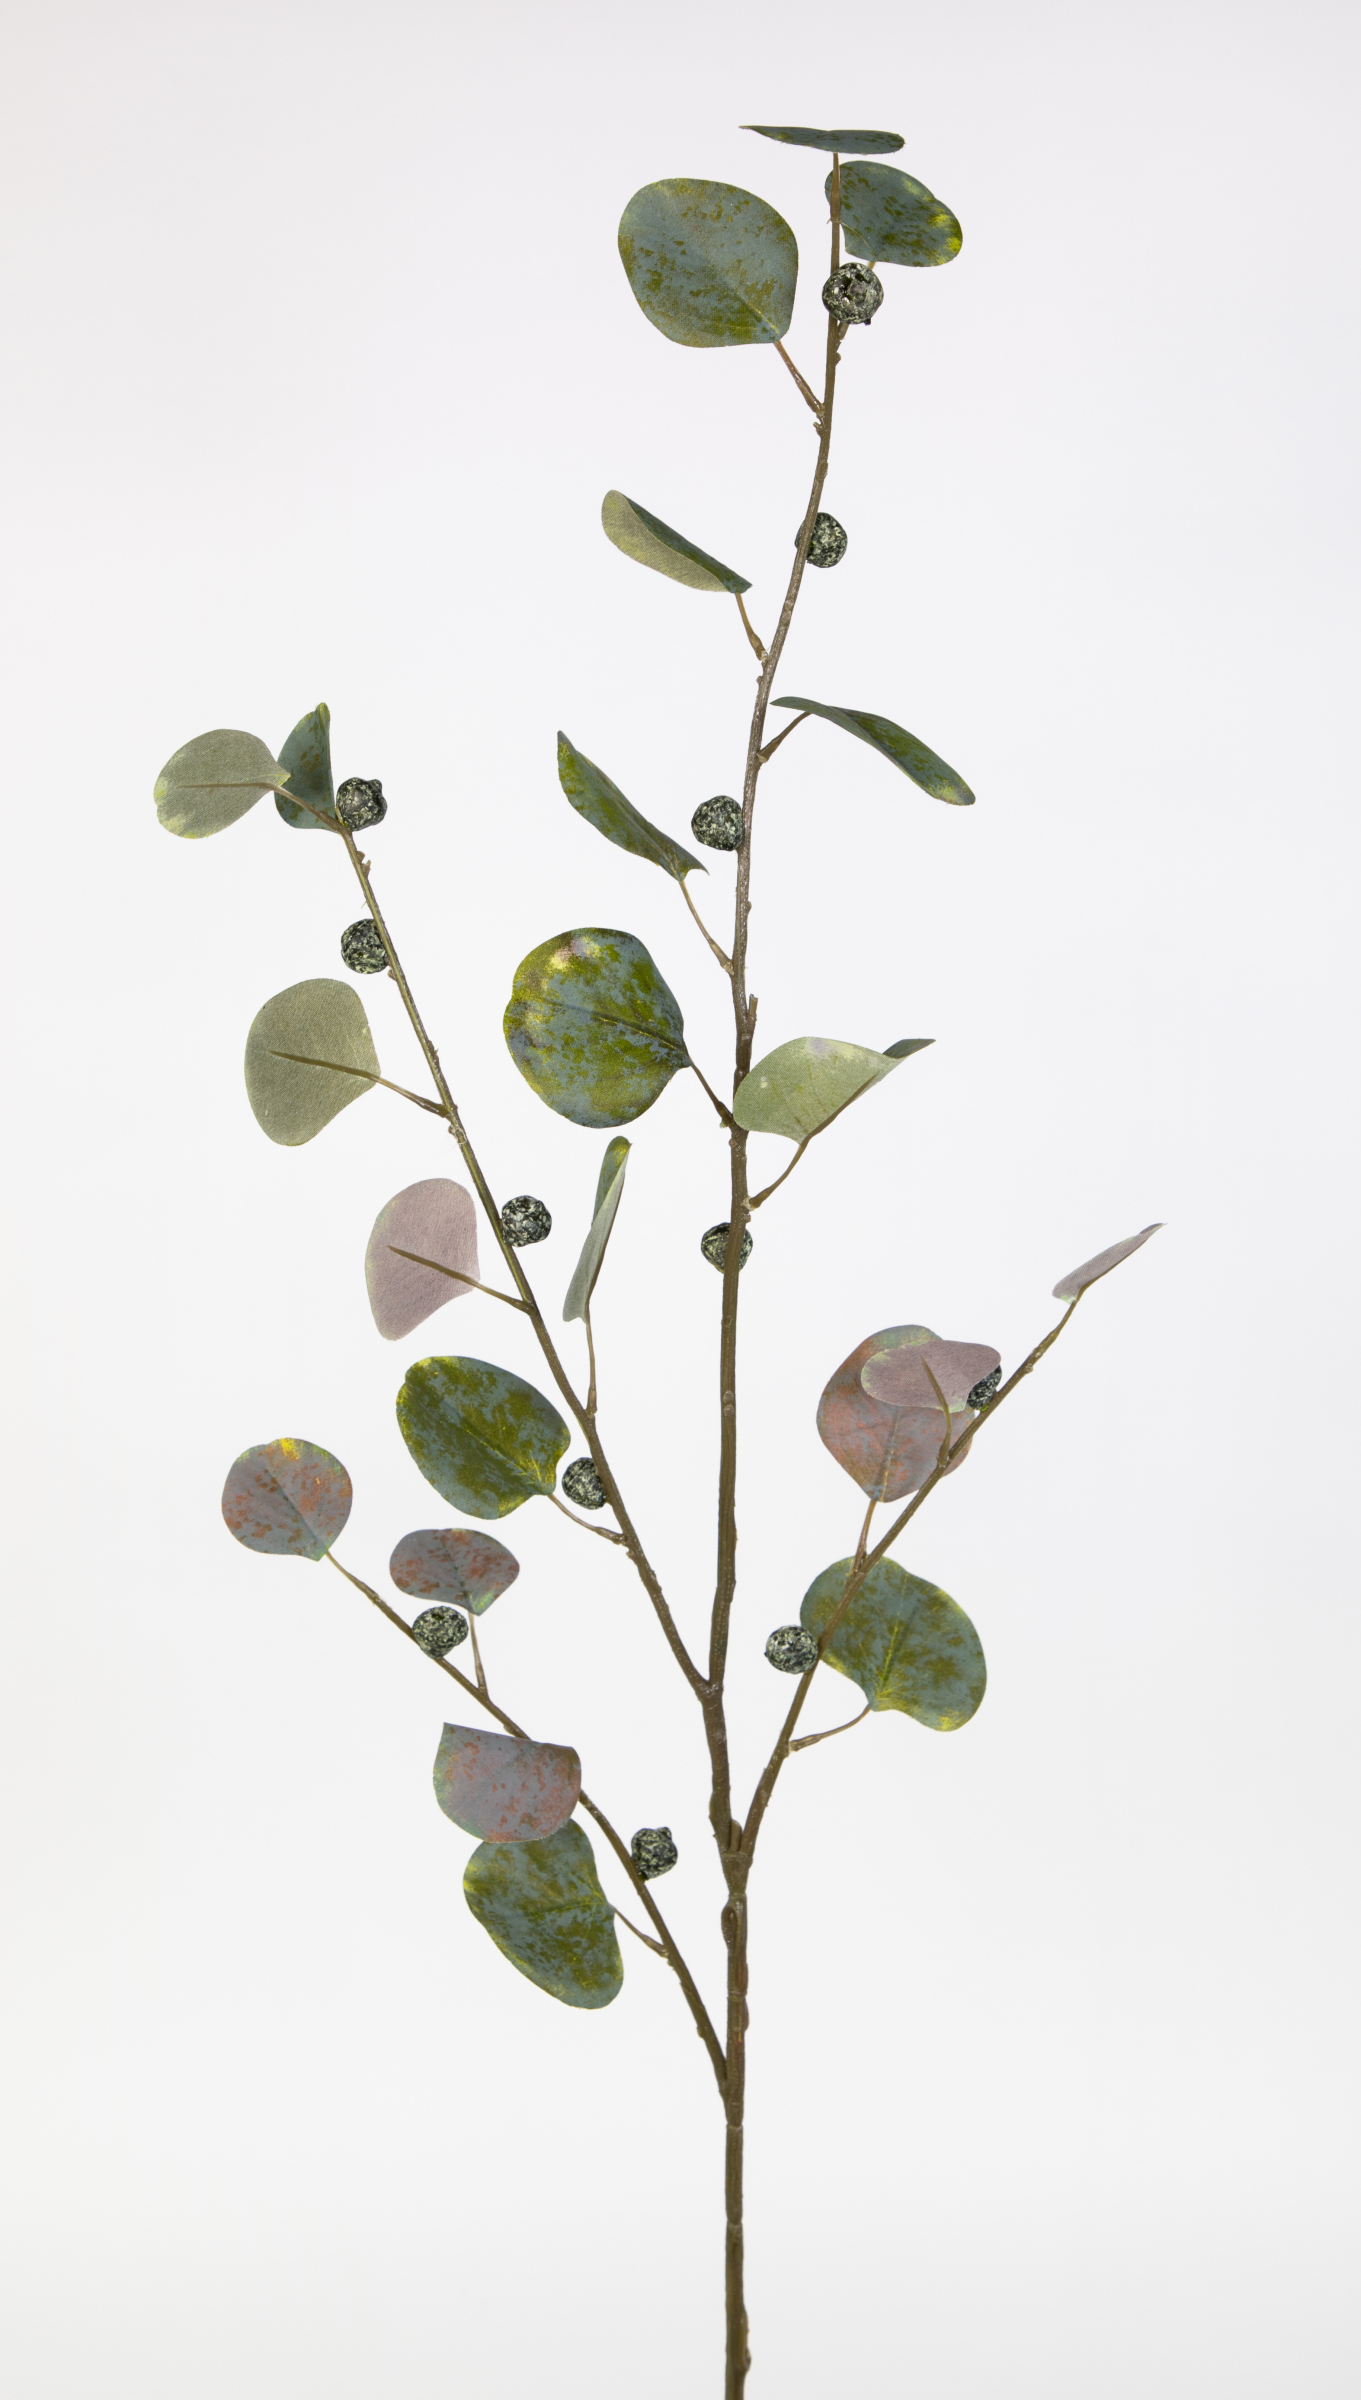 Eukalyptuszweig mit Früchten grün Zweige Kunstzweig Eukalyptus künstlicher künstliche 110cm JA